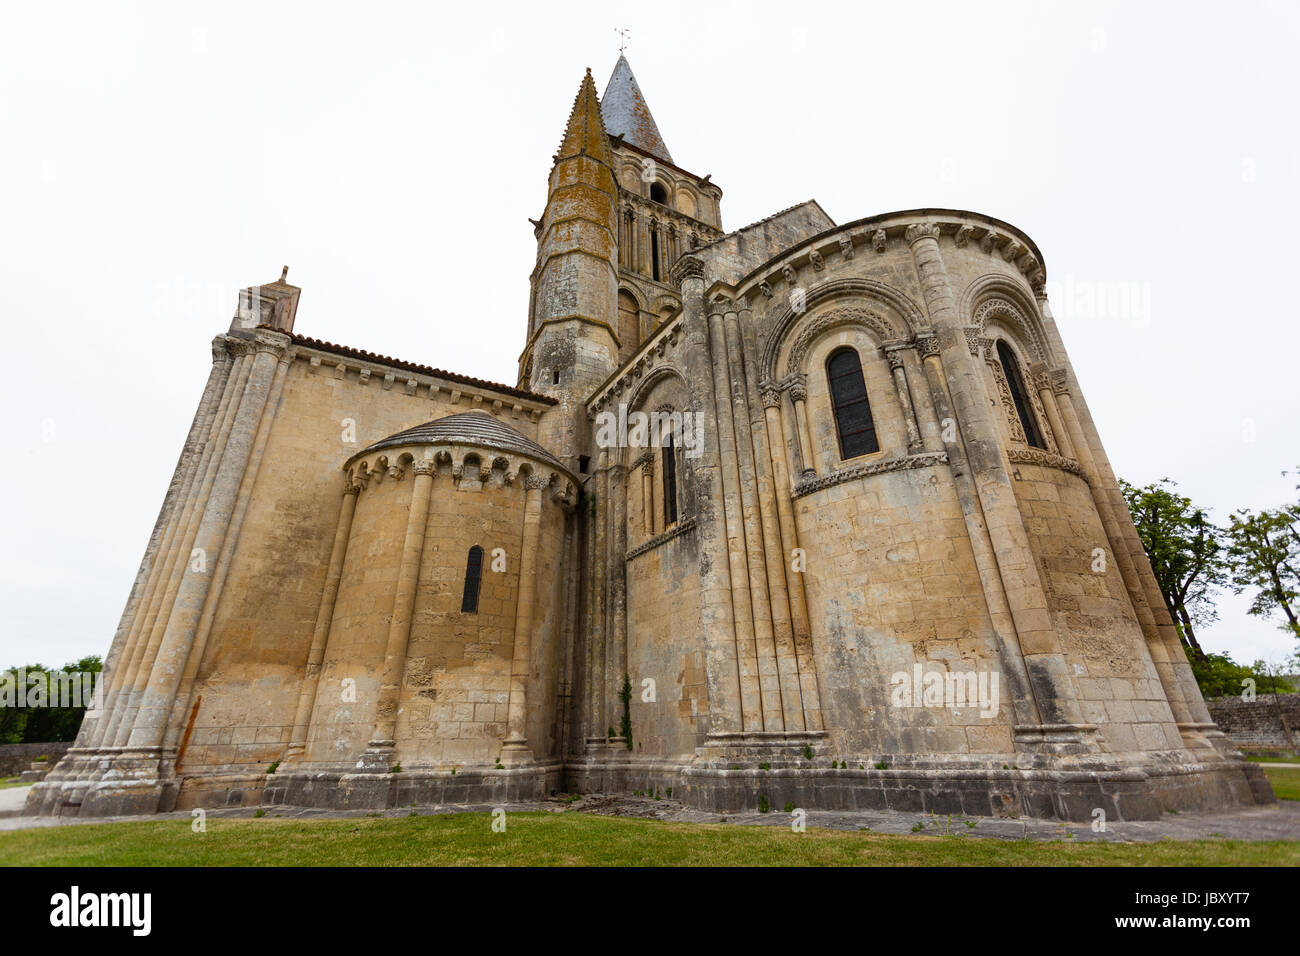 Chevet de l'église d'Aulnay de Saintonge en Charente Maritime région de France Banque D'Images